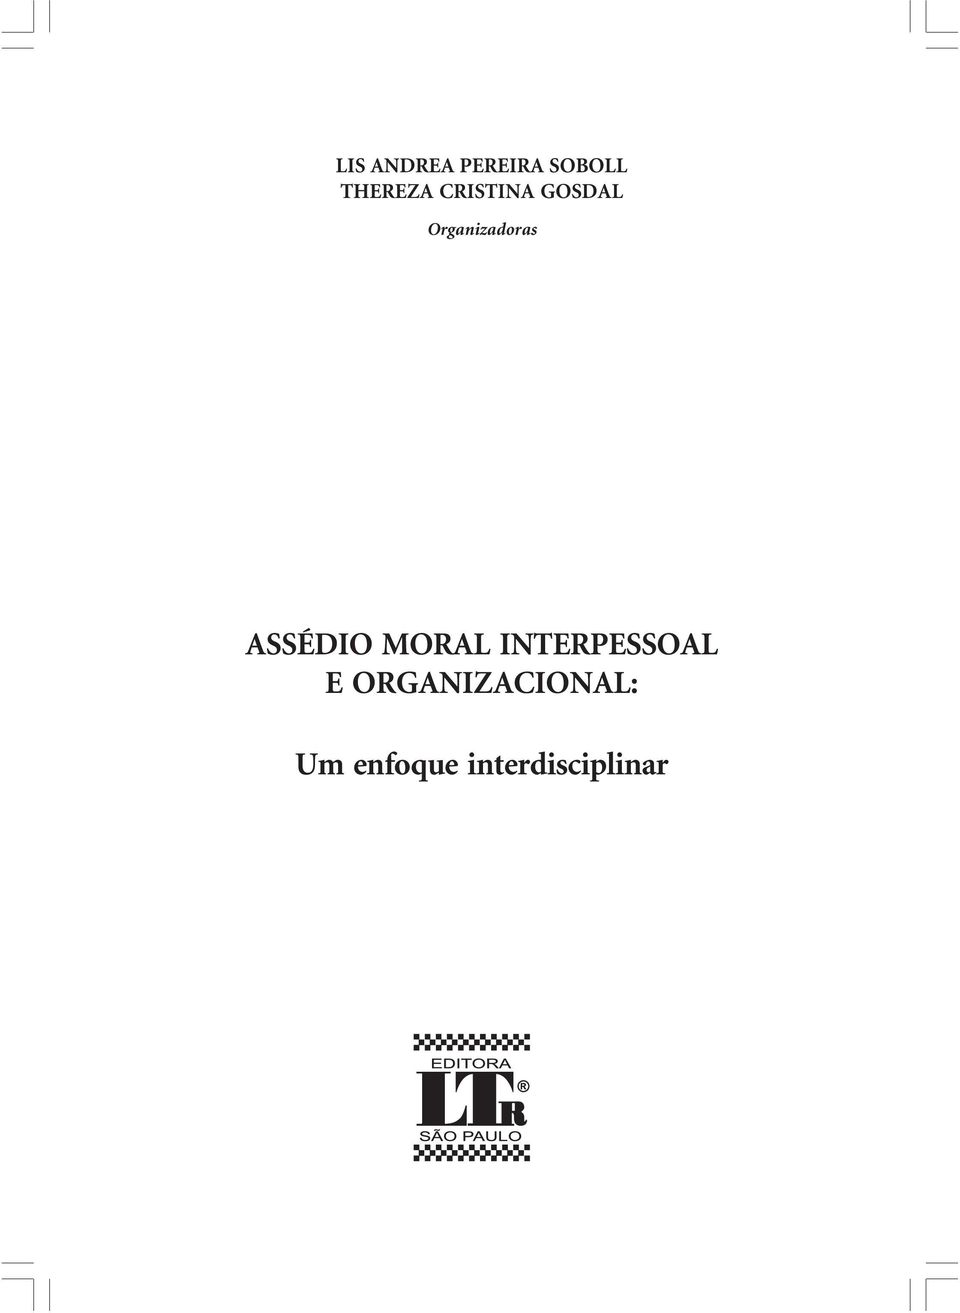 ASSÉDIO MORAL INTERPESSOAL E